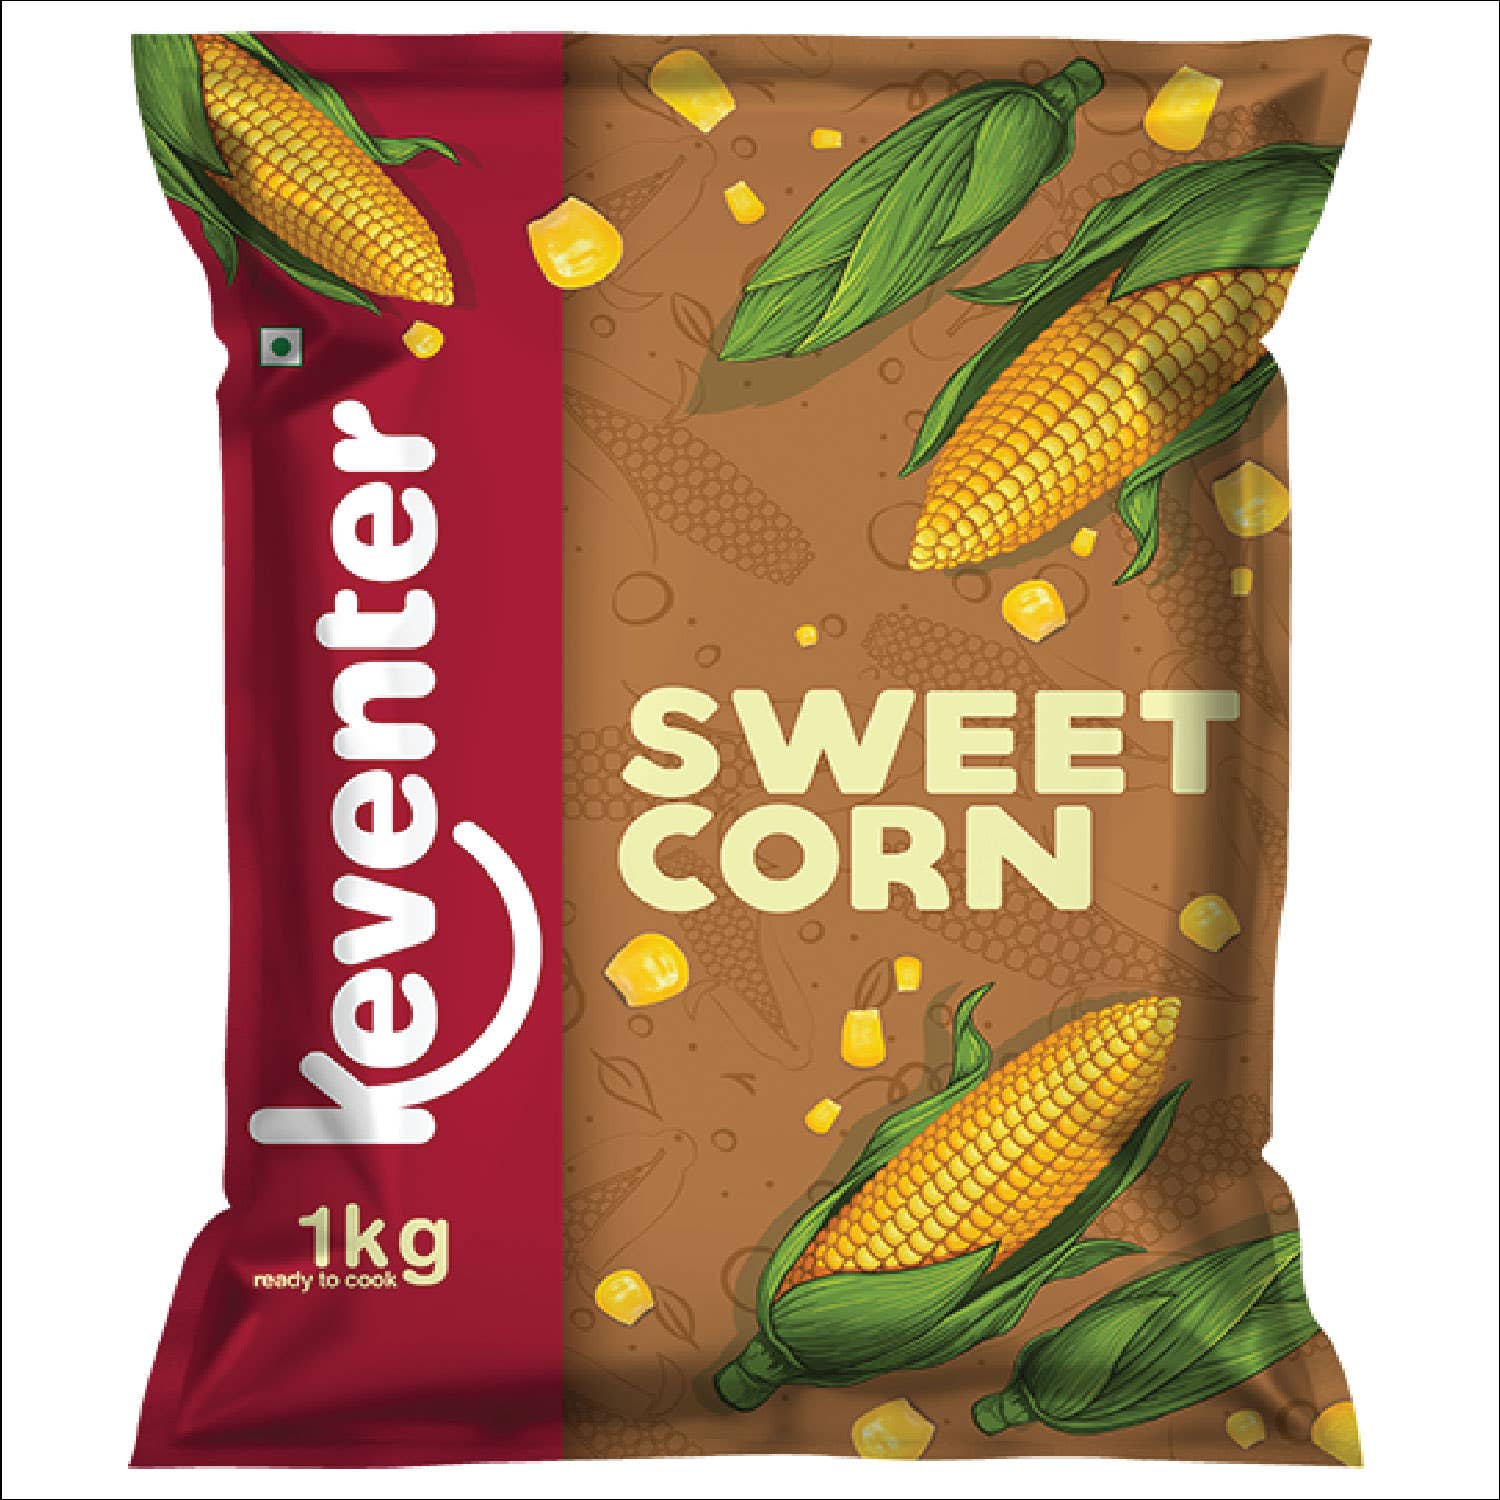 Keventers Sweet Corn 1Kg